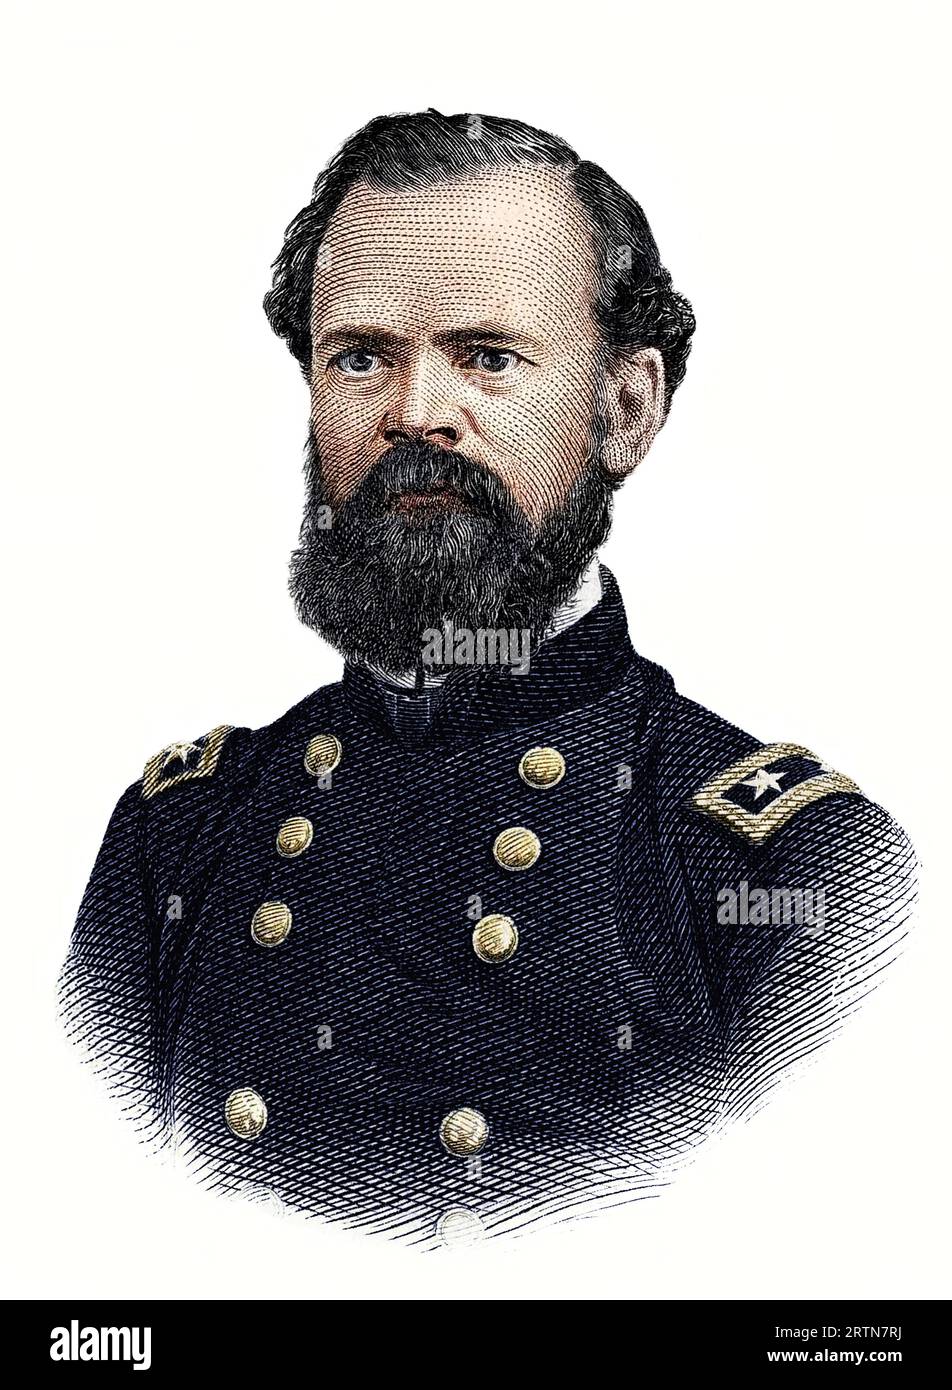 Retrato del general James Birdseye McPherson aislado sobre fondo blanco Foto de stock